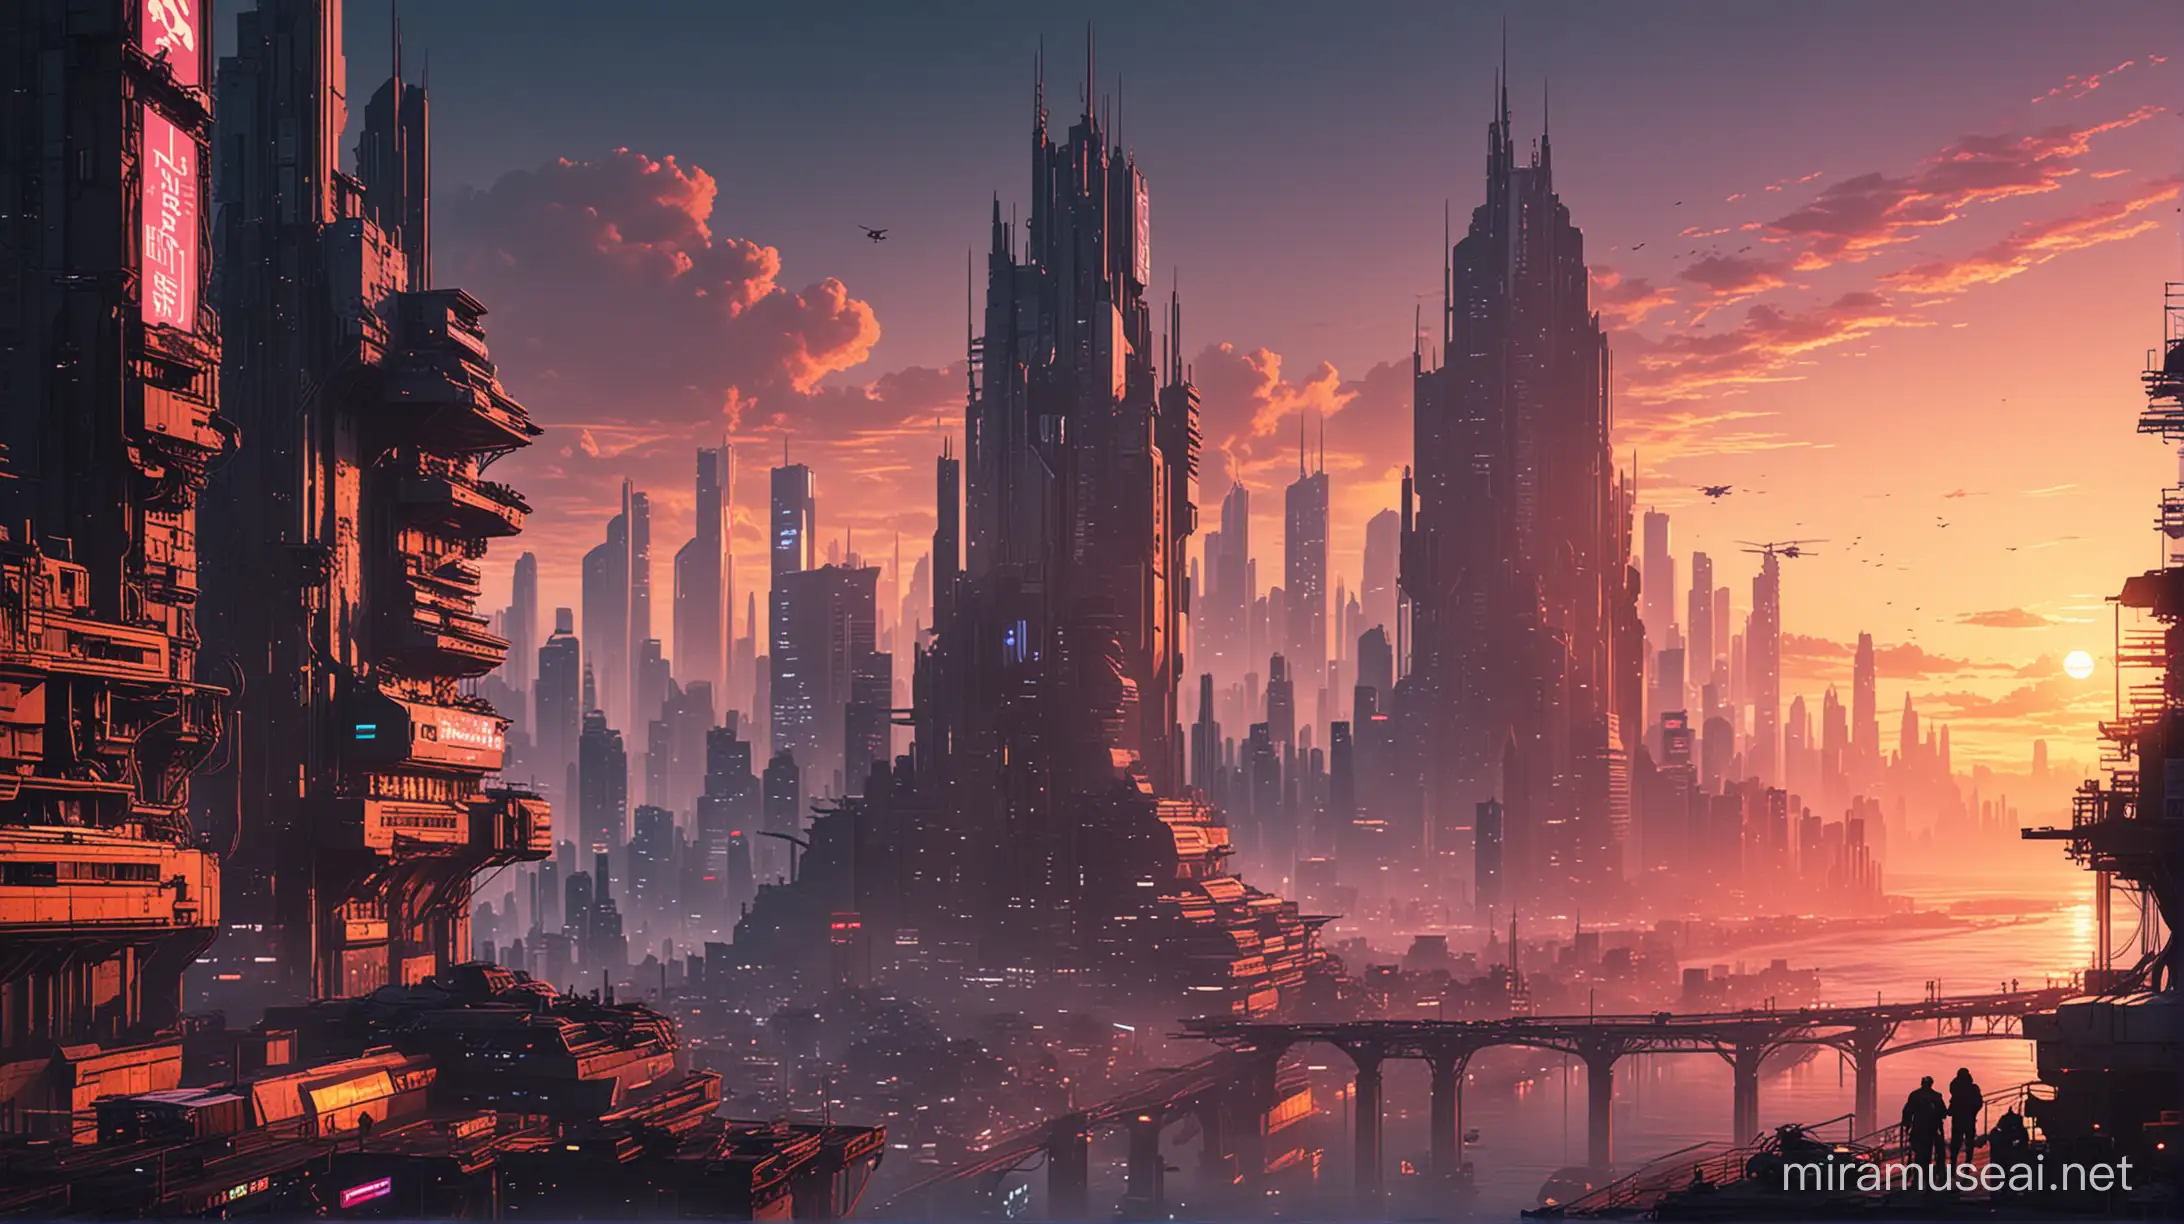 Futuristic Cyberpunk Cityscape at Sunset